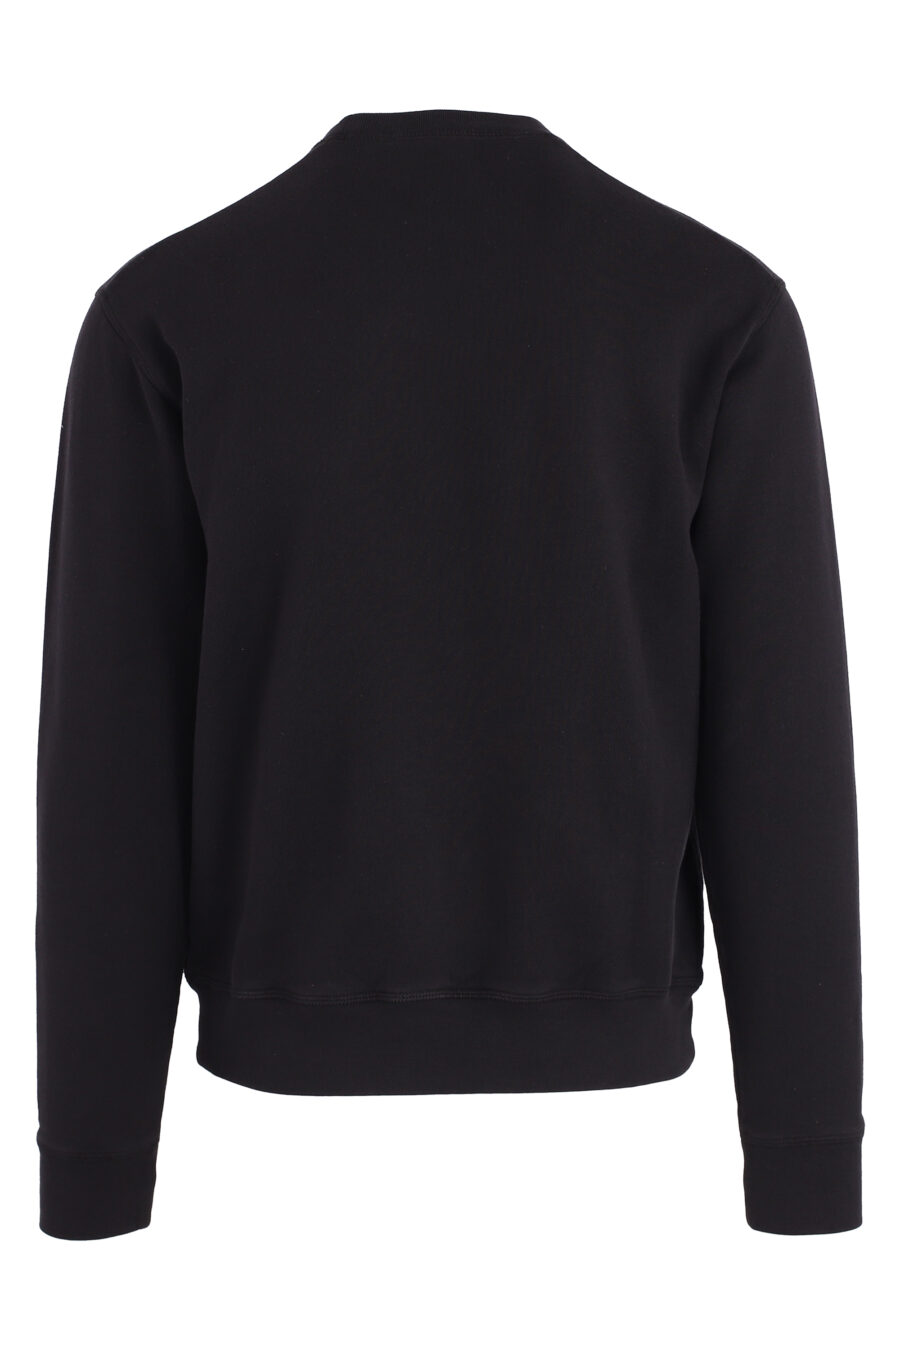 Schwarzes Sweatshirt mit weißem Umrisslogo - IMG 4712